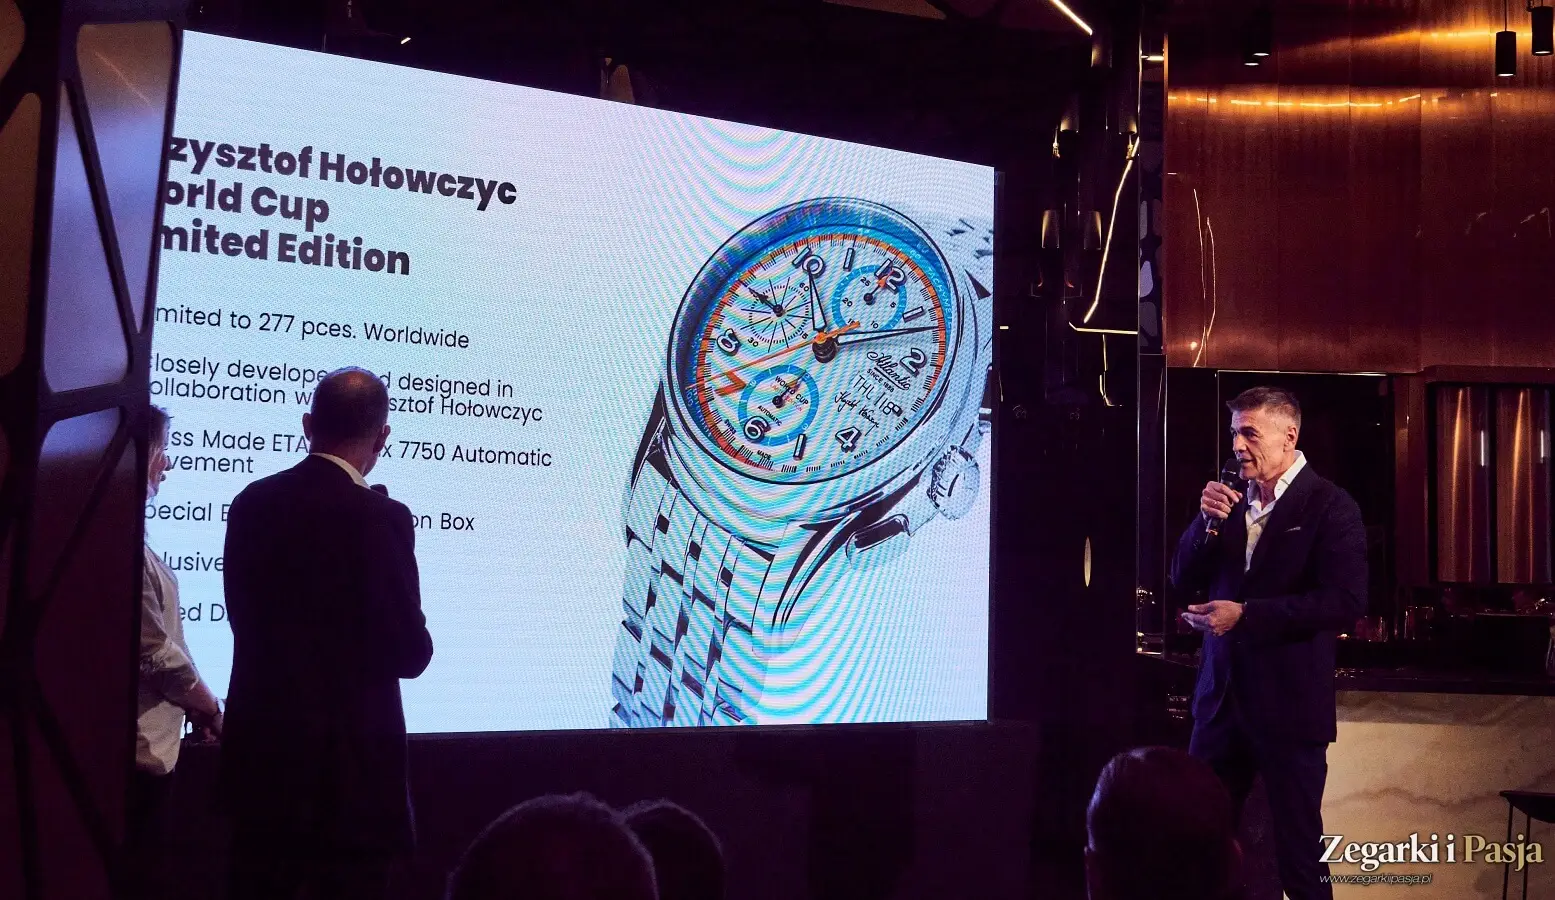 Premiera zegarka Atlantic World Cup Limited Edition Krzysztof Hołowczyc